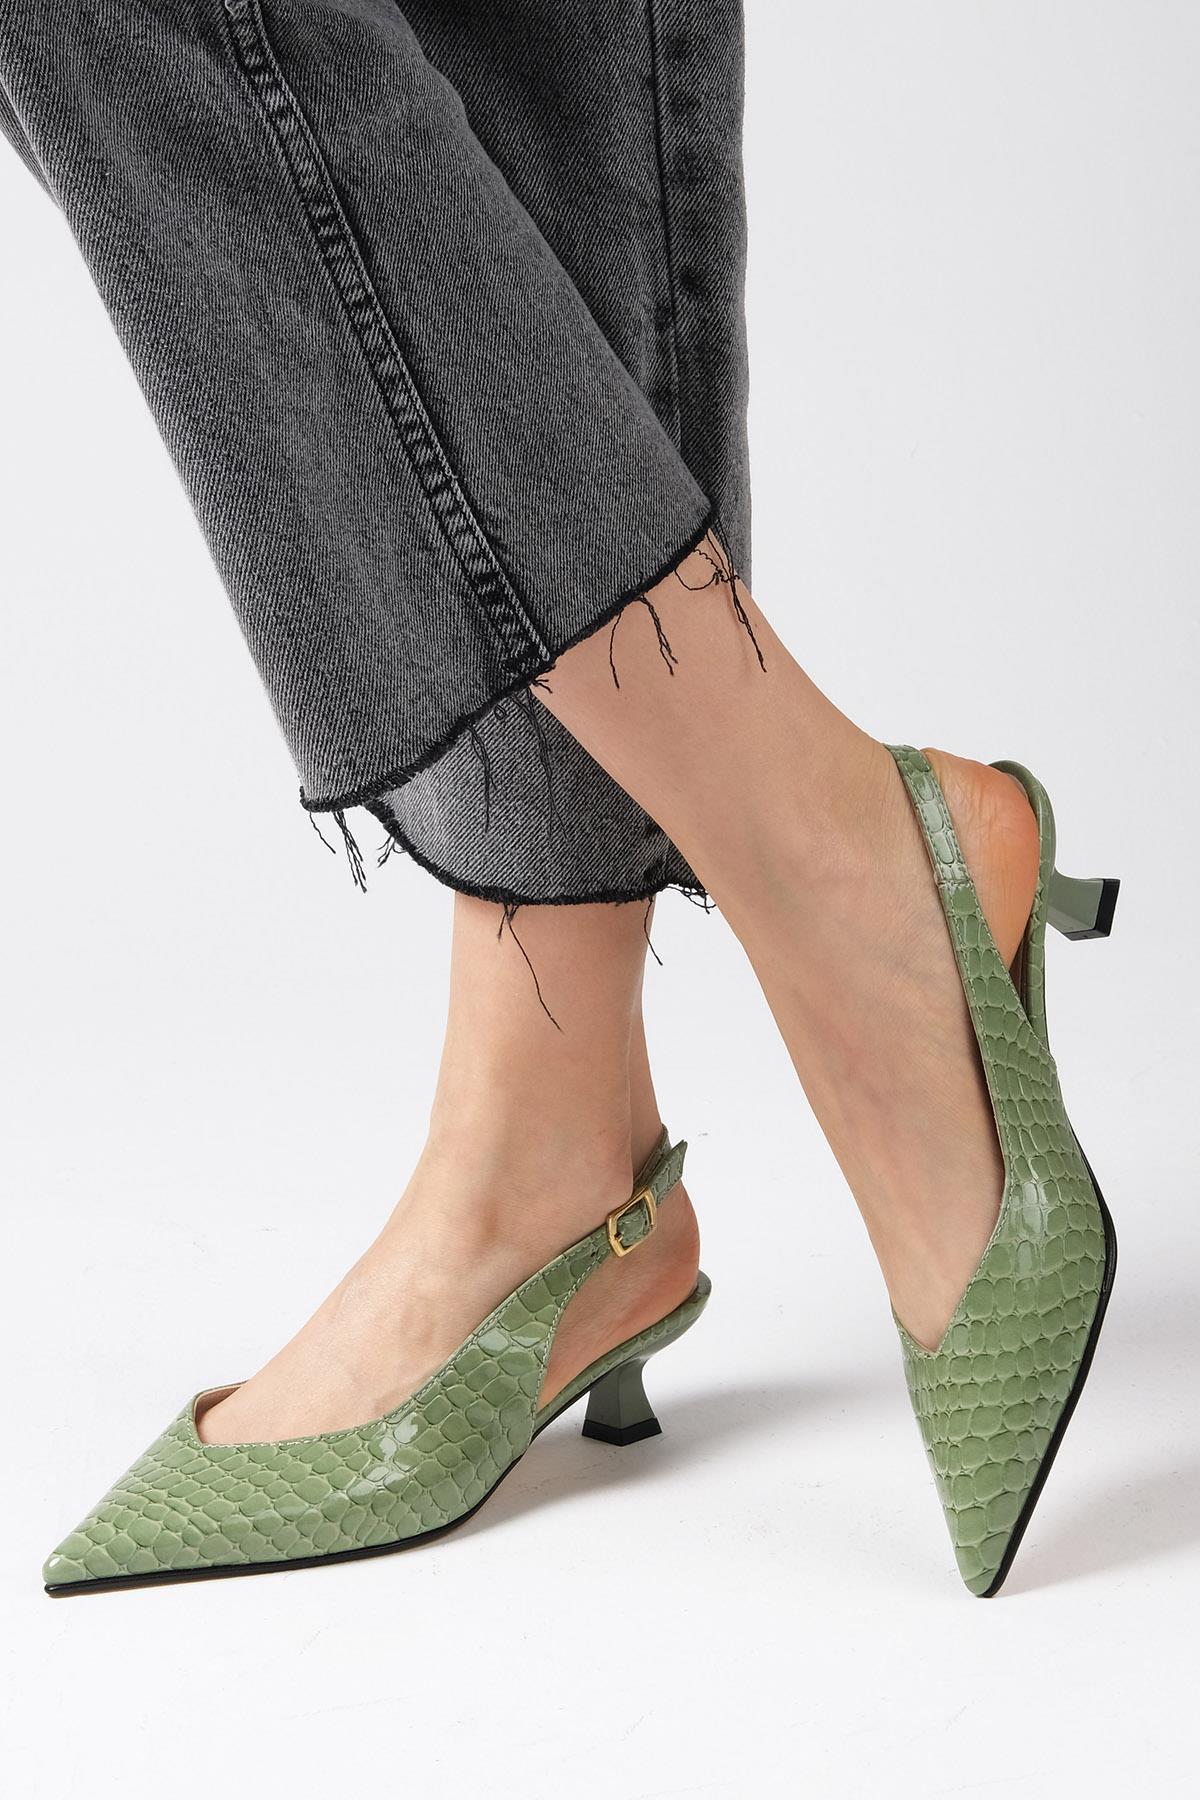 Mio Gusto Yeşil Renk Yılan Derisi Desenli Kısa Topuklu Ayakkabı